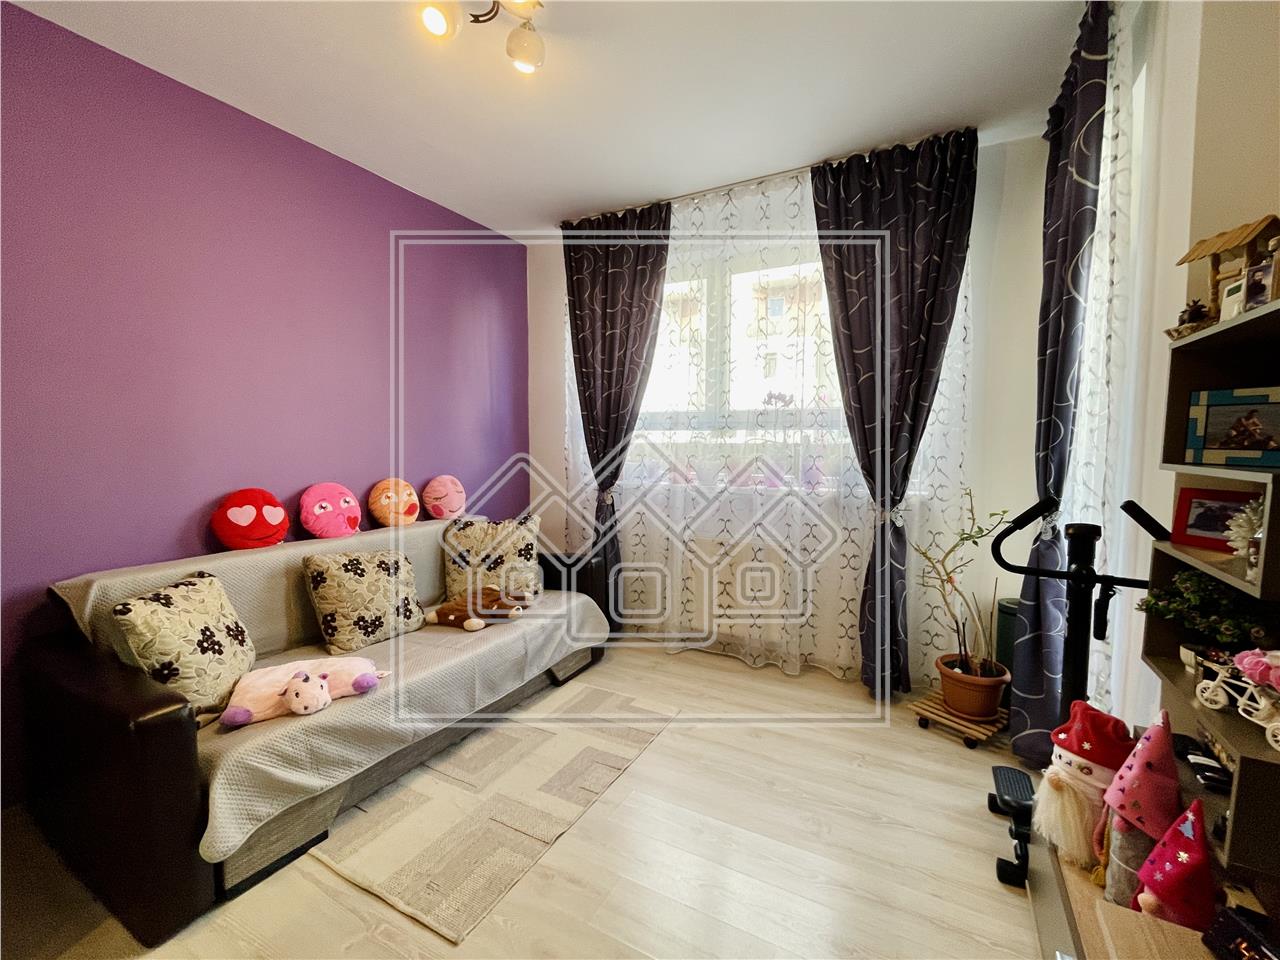 Wohnung zum Verkauf in Sibiu - 2 Zimmer und privater Garten - Turnisor